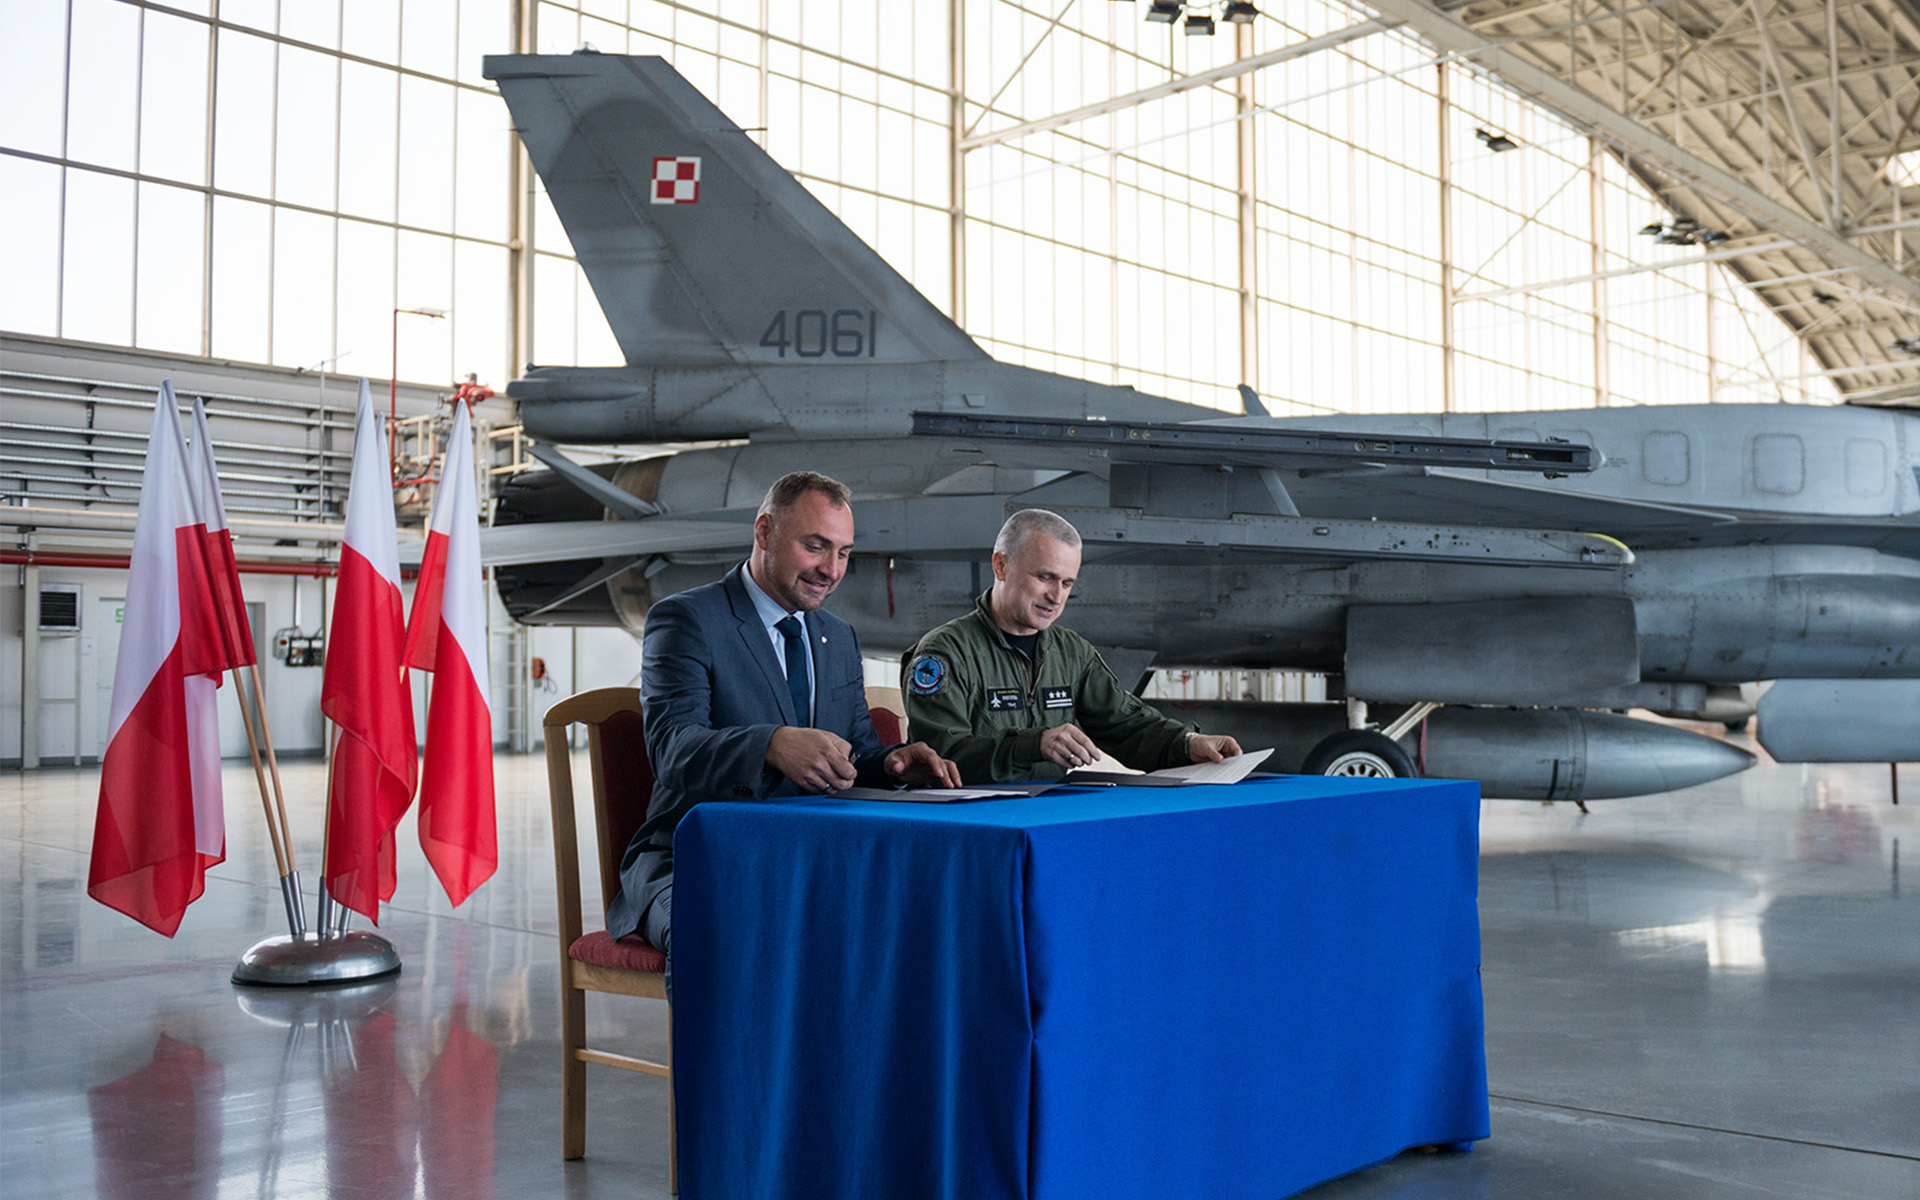 Podpisanie umowy z bazą na Krzesinach w sprawie współpracy na rzecz budowy Centrum Lotnictwa w Poznaniu, oficjalnie podpisanie umowy